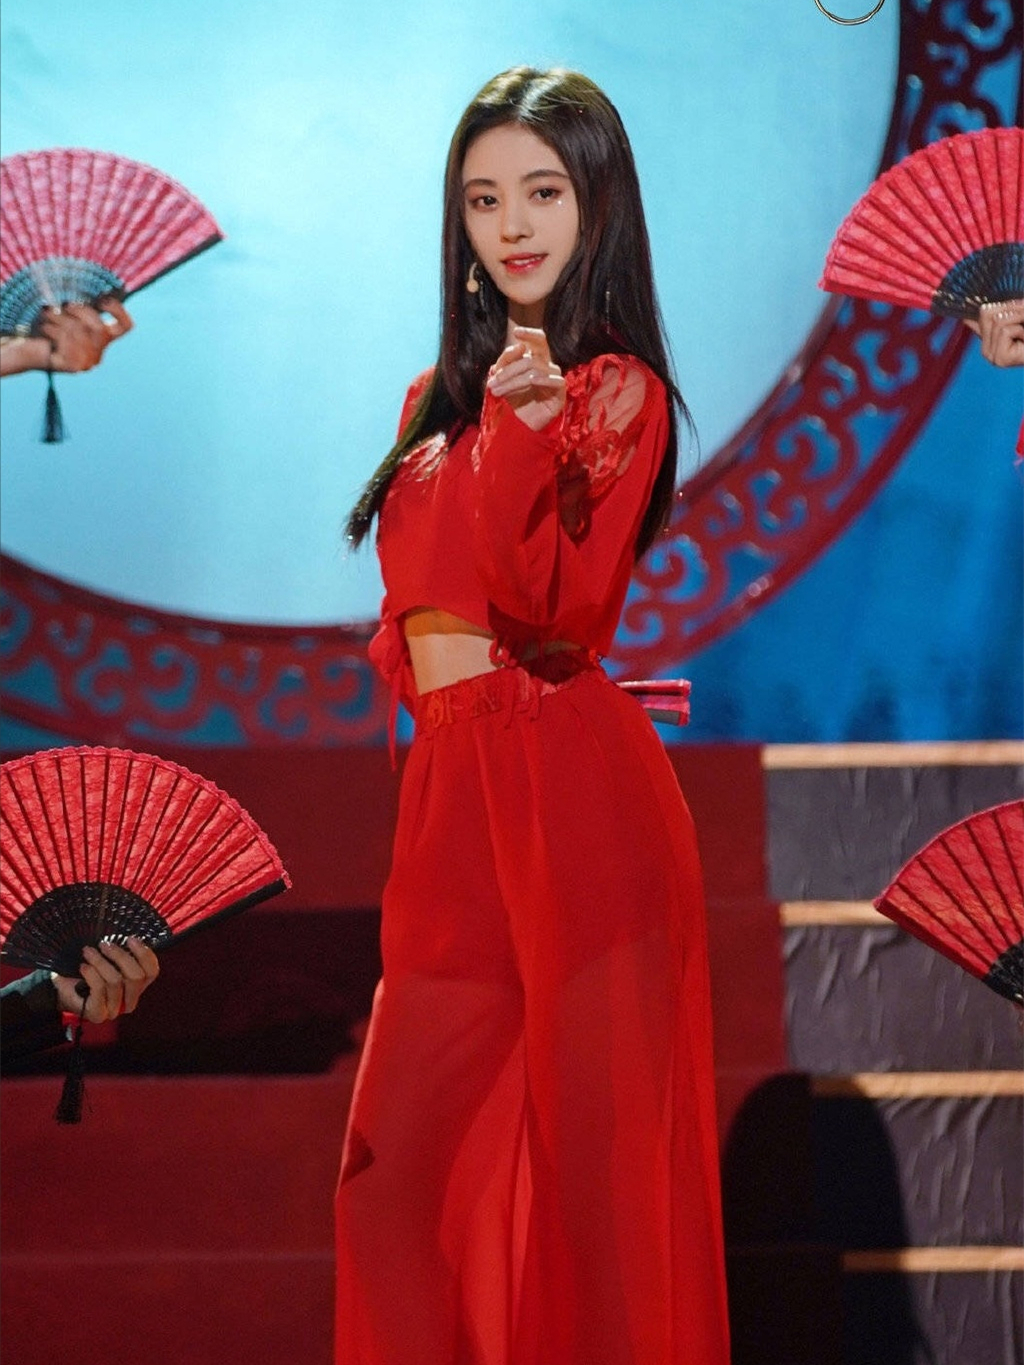 鞠婧祎红衣造型来袭,没想到换个风格居然能这么惊艳!